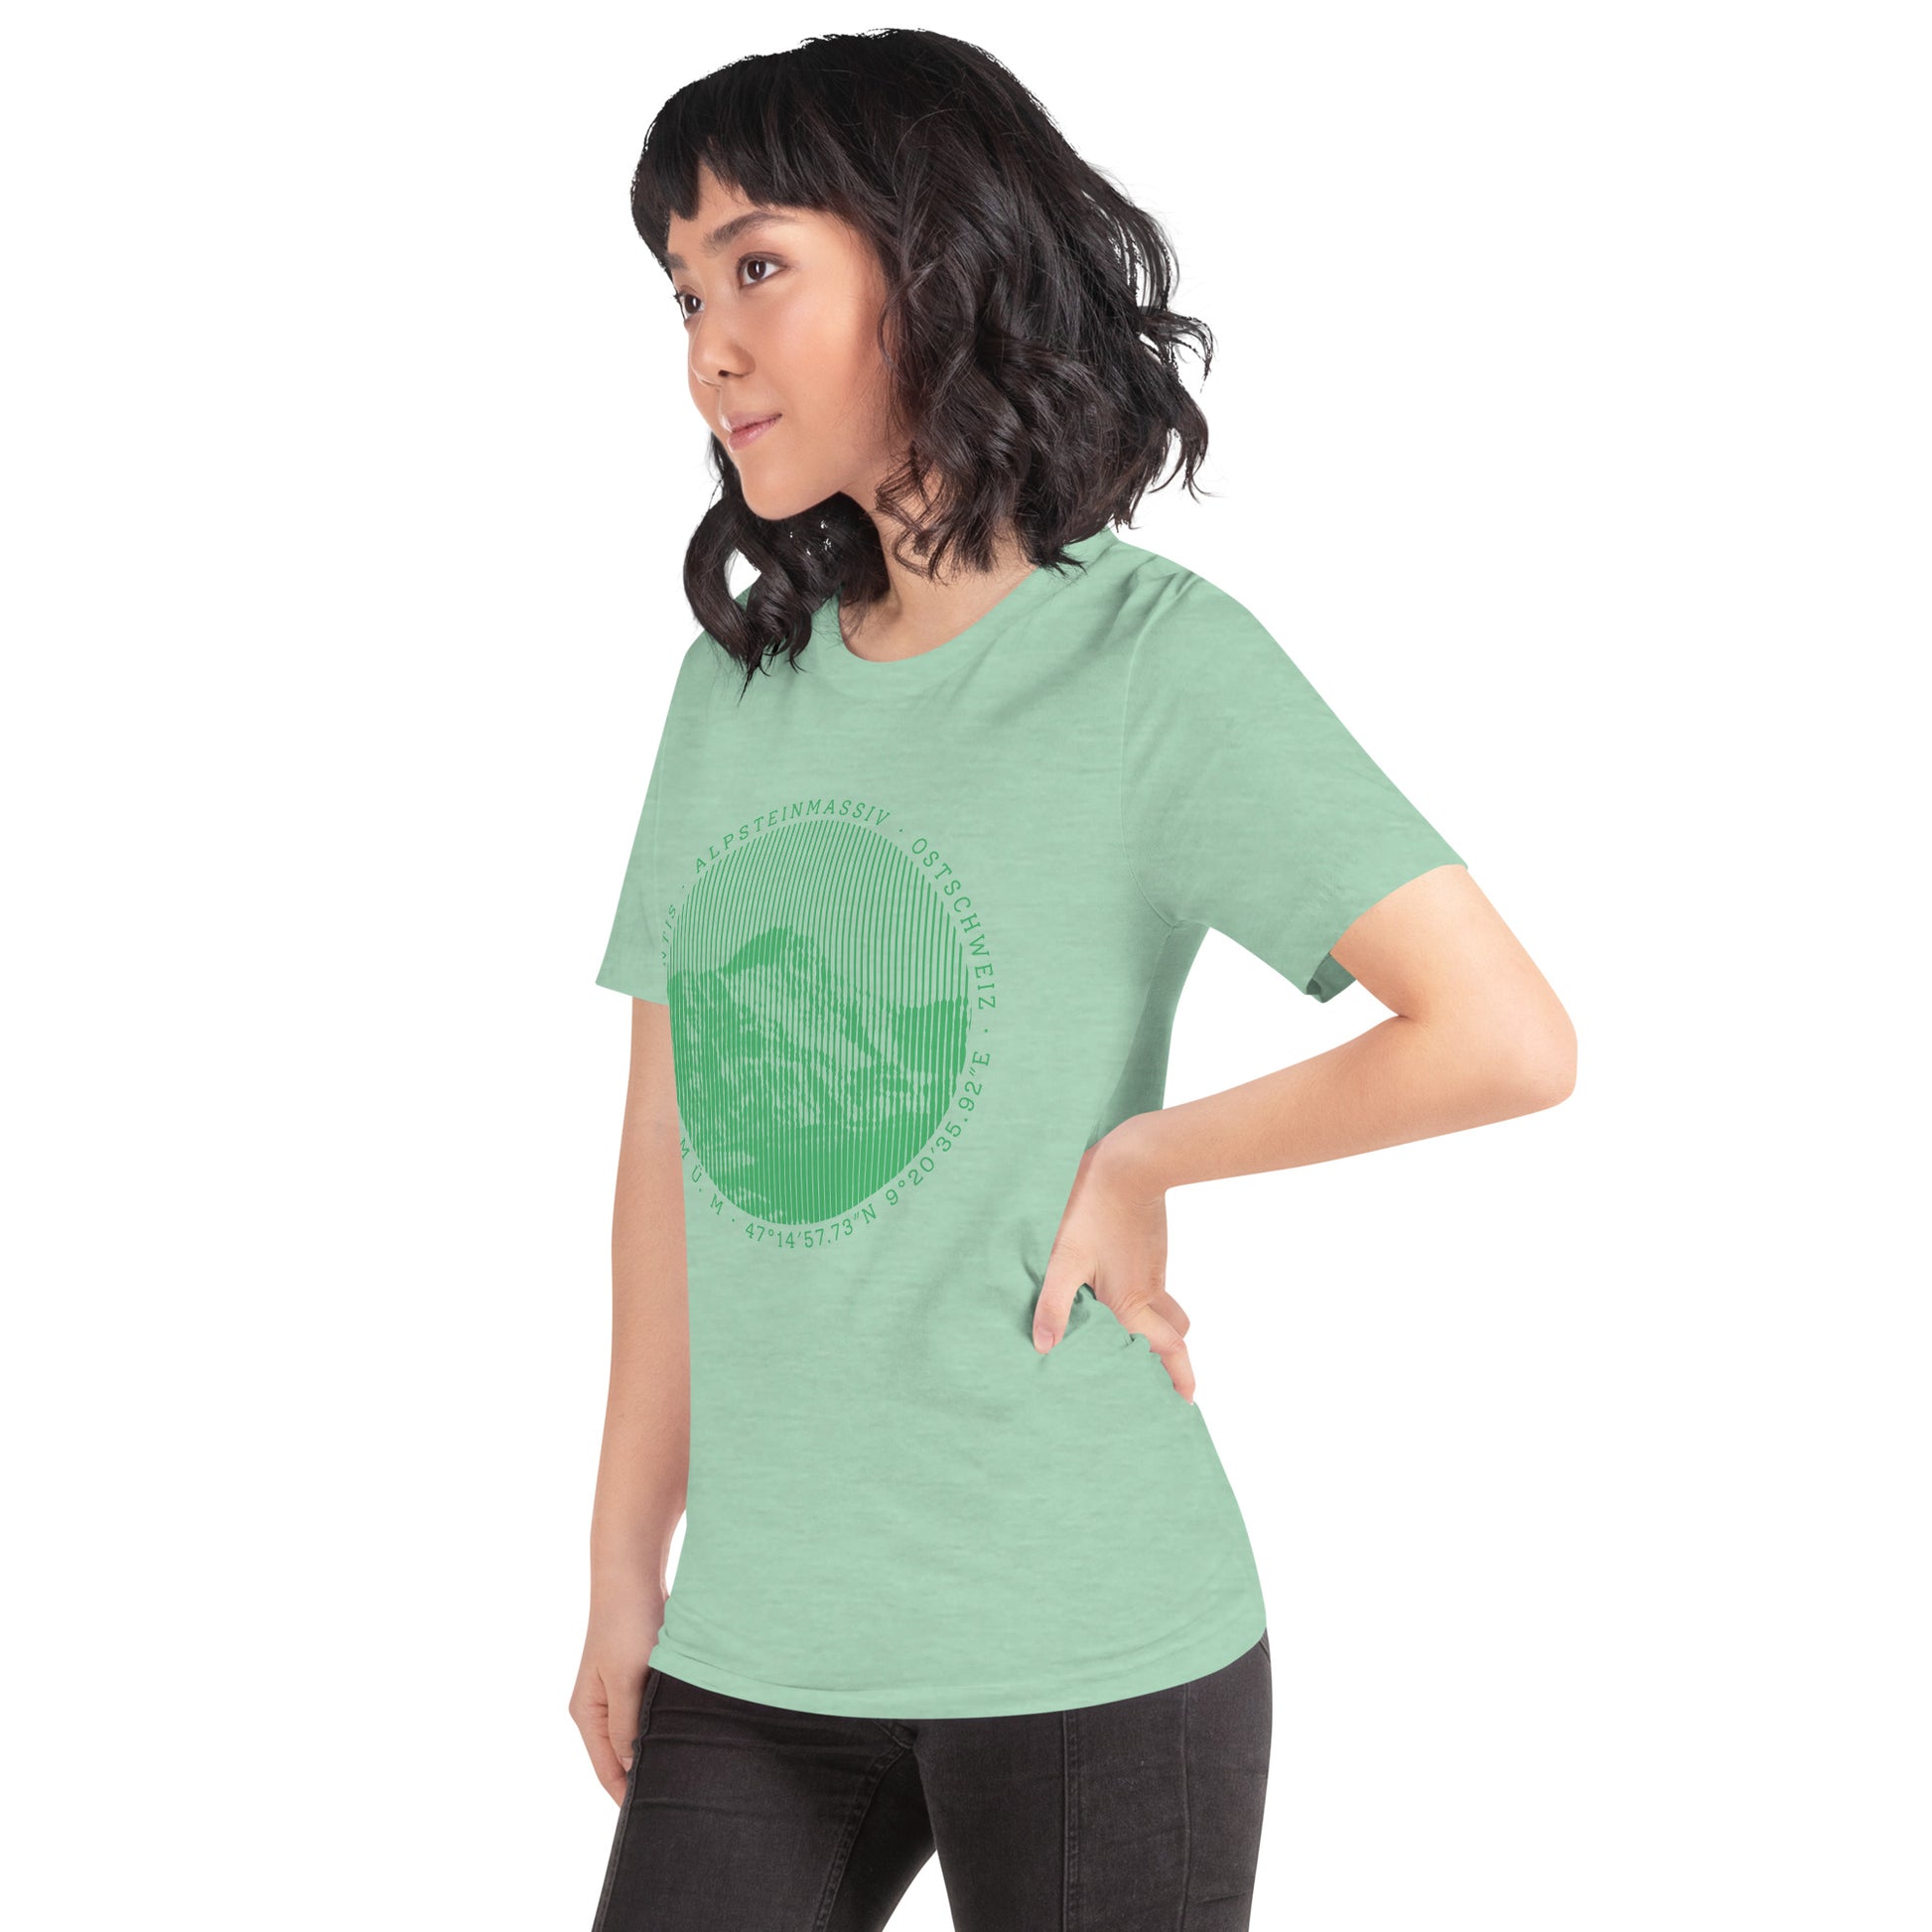 Diese Bergbegeisterte trägt ein mintgrün meliertes Damen T-Shirt von Vallada mit einem Aufdruck des Säntis-Gipfels. Dieses T-Shirt ist ein Statement für ihren Enthusiasmus für diesen Berg in den Appenzeller Alpen.